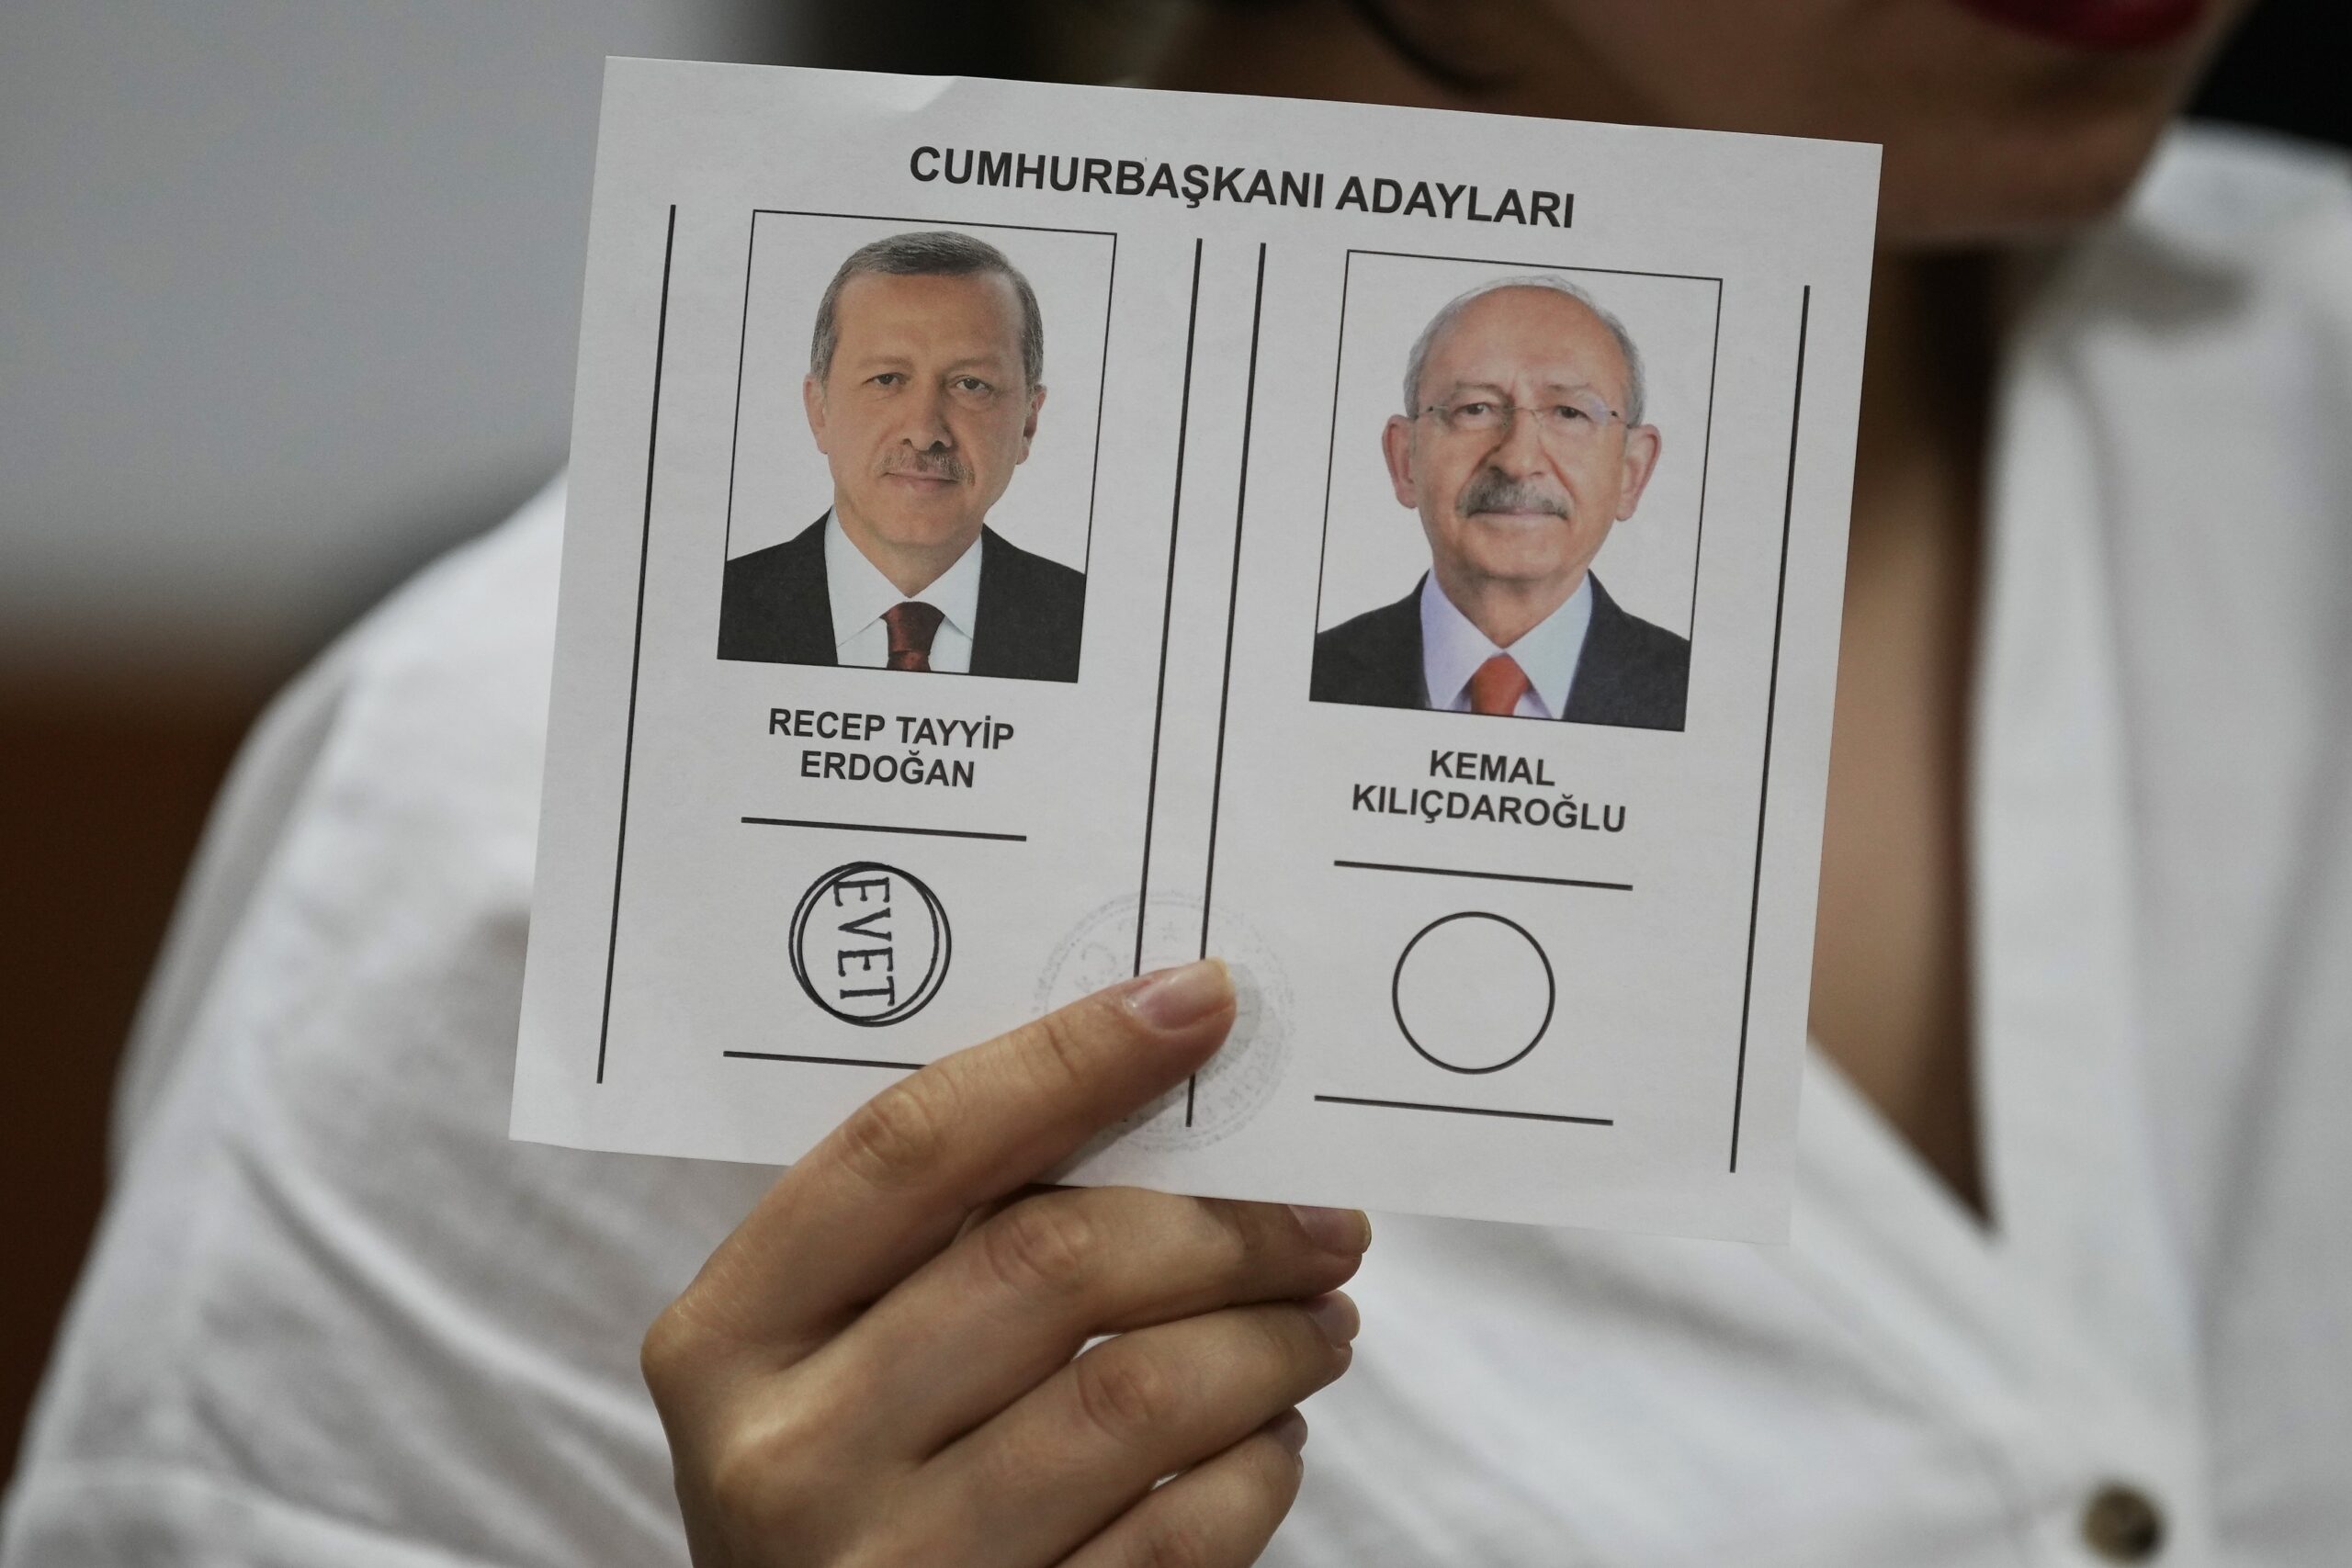 Anadolu – Τουρκικές εκλογές: 55,26% για τον Ερντογάν, 44,74% για τον Κιλιντστάρογλου – Η επικράτηση στο χάρτη